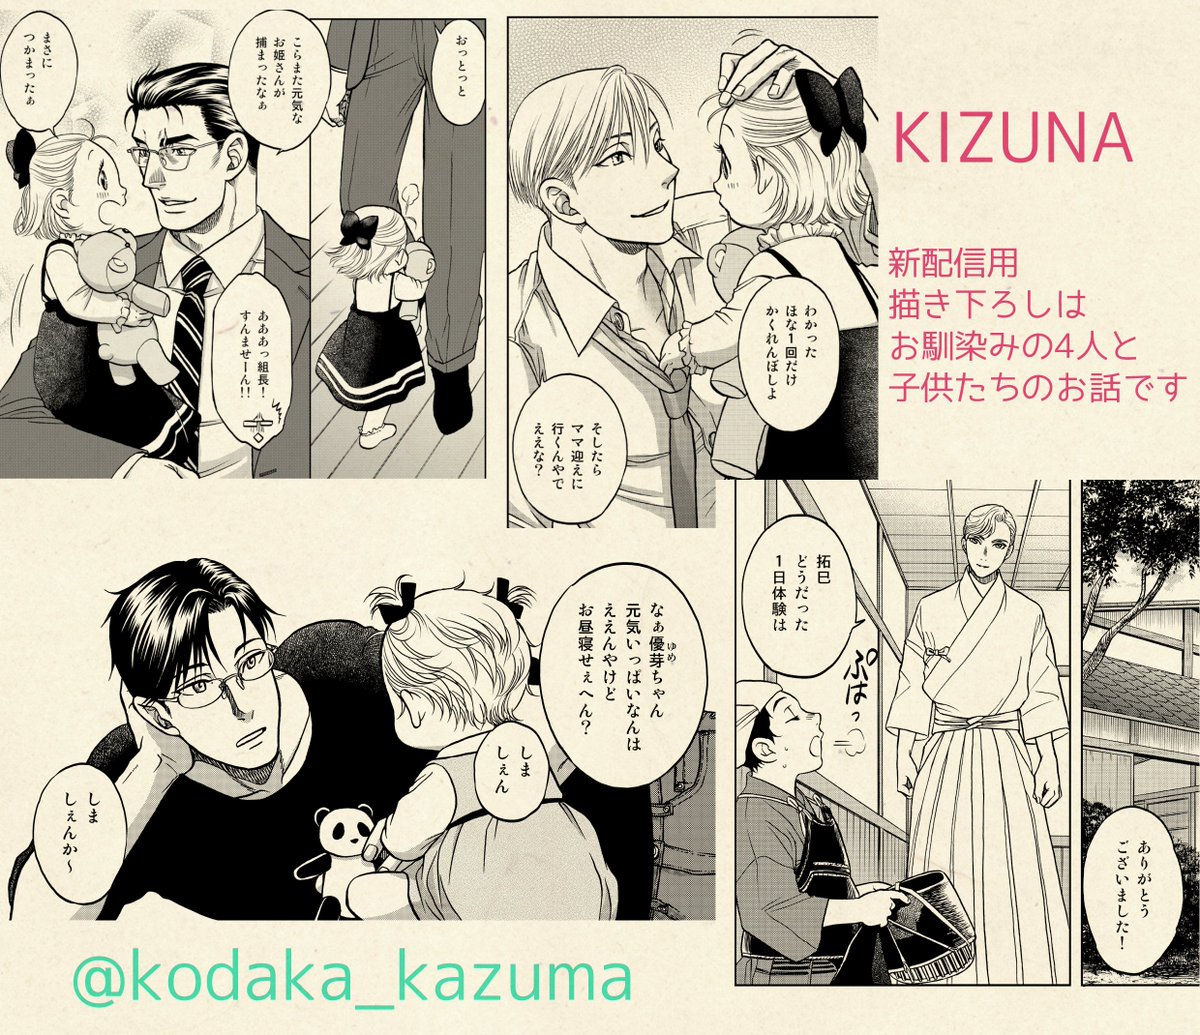 【電子書籍のお知らせ】新装電子書籍版「KIZUNA」は描き下ろしショートつき!配信はまだ先ですが、決まり次第お知らせしま～す(*'ω`*)
#コンパスコミックス #こだか和麻 